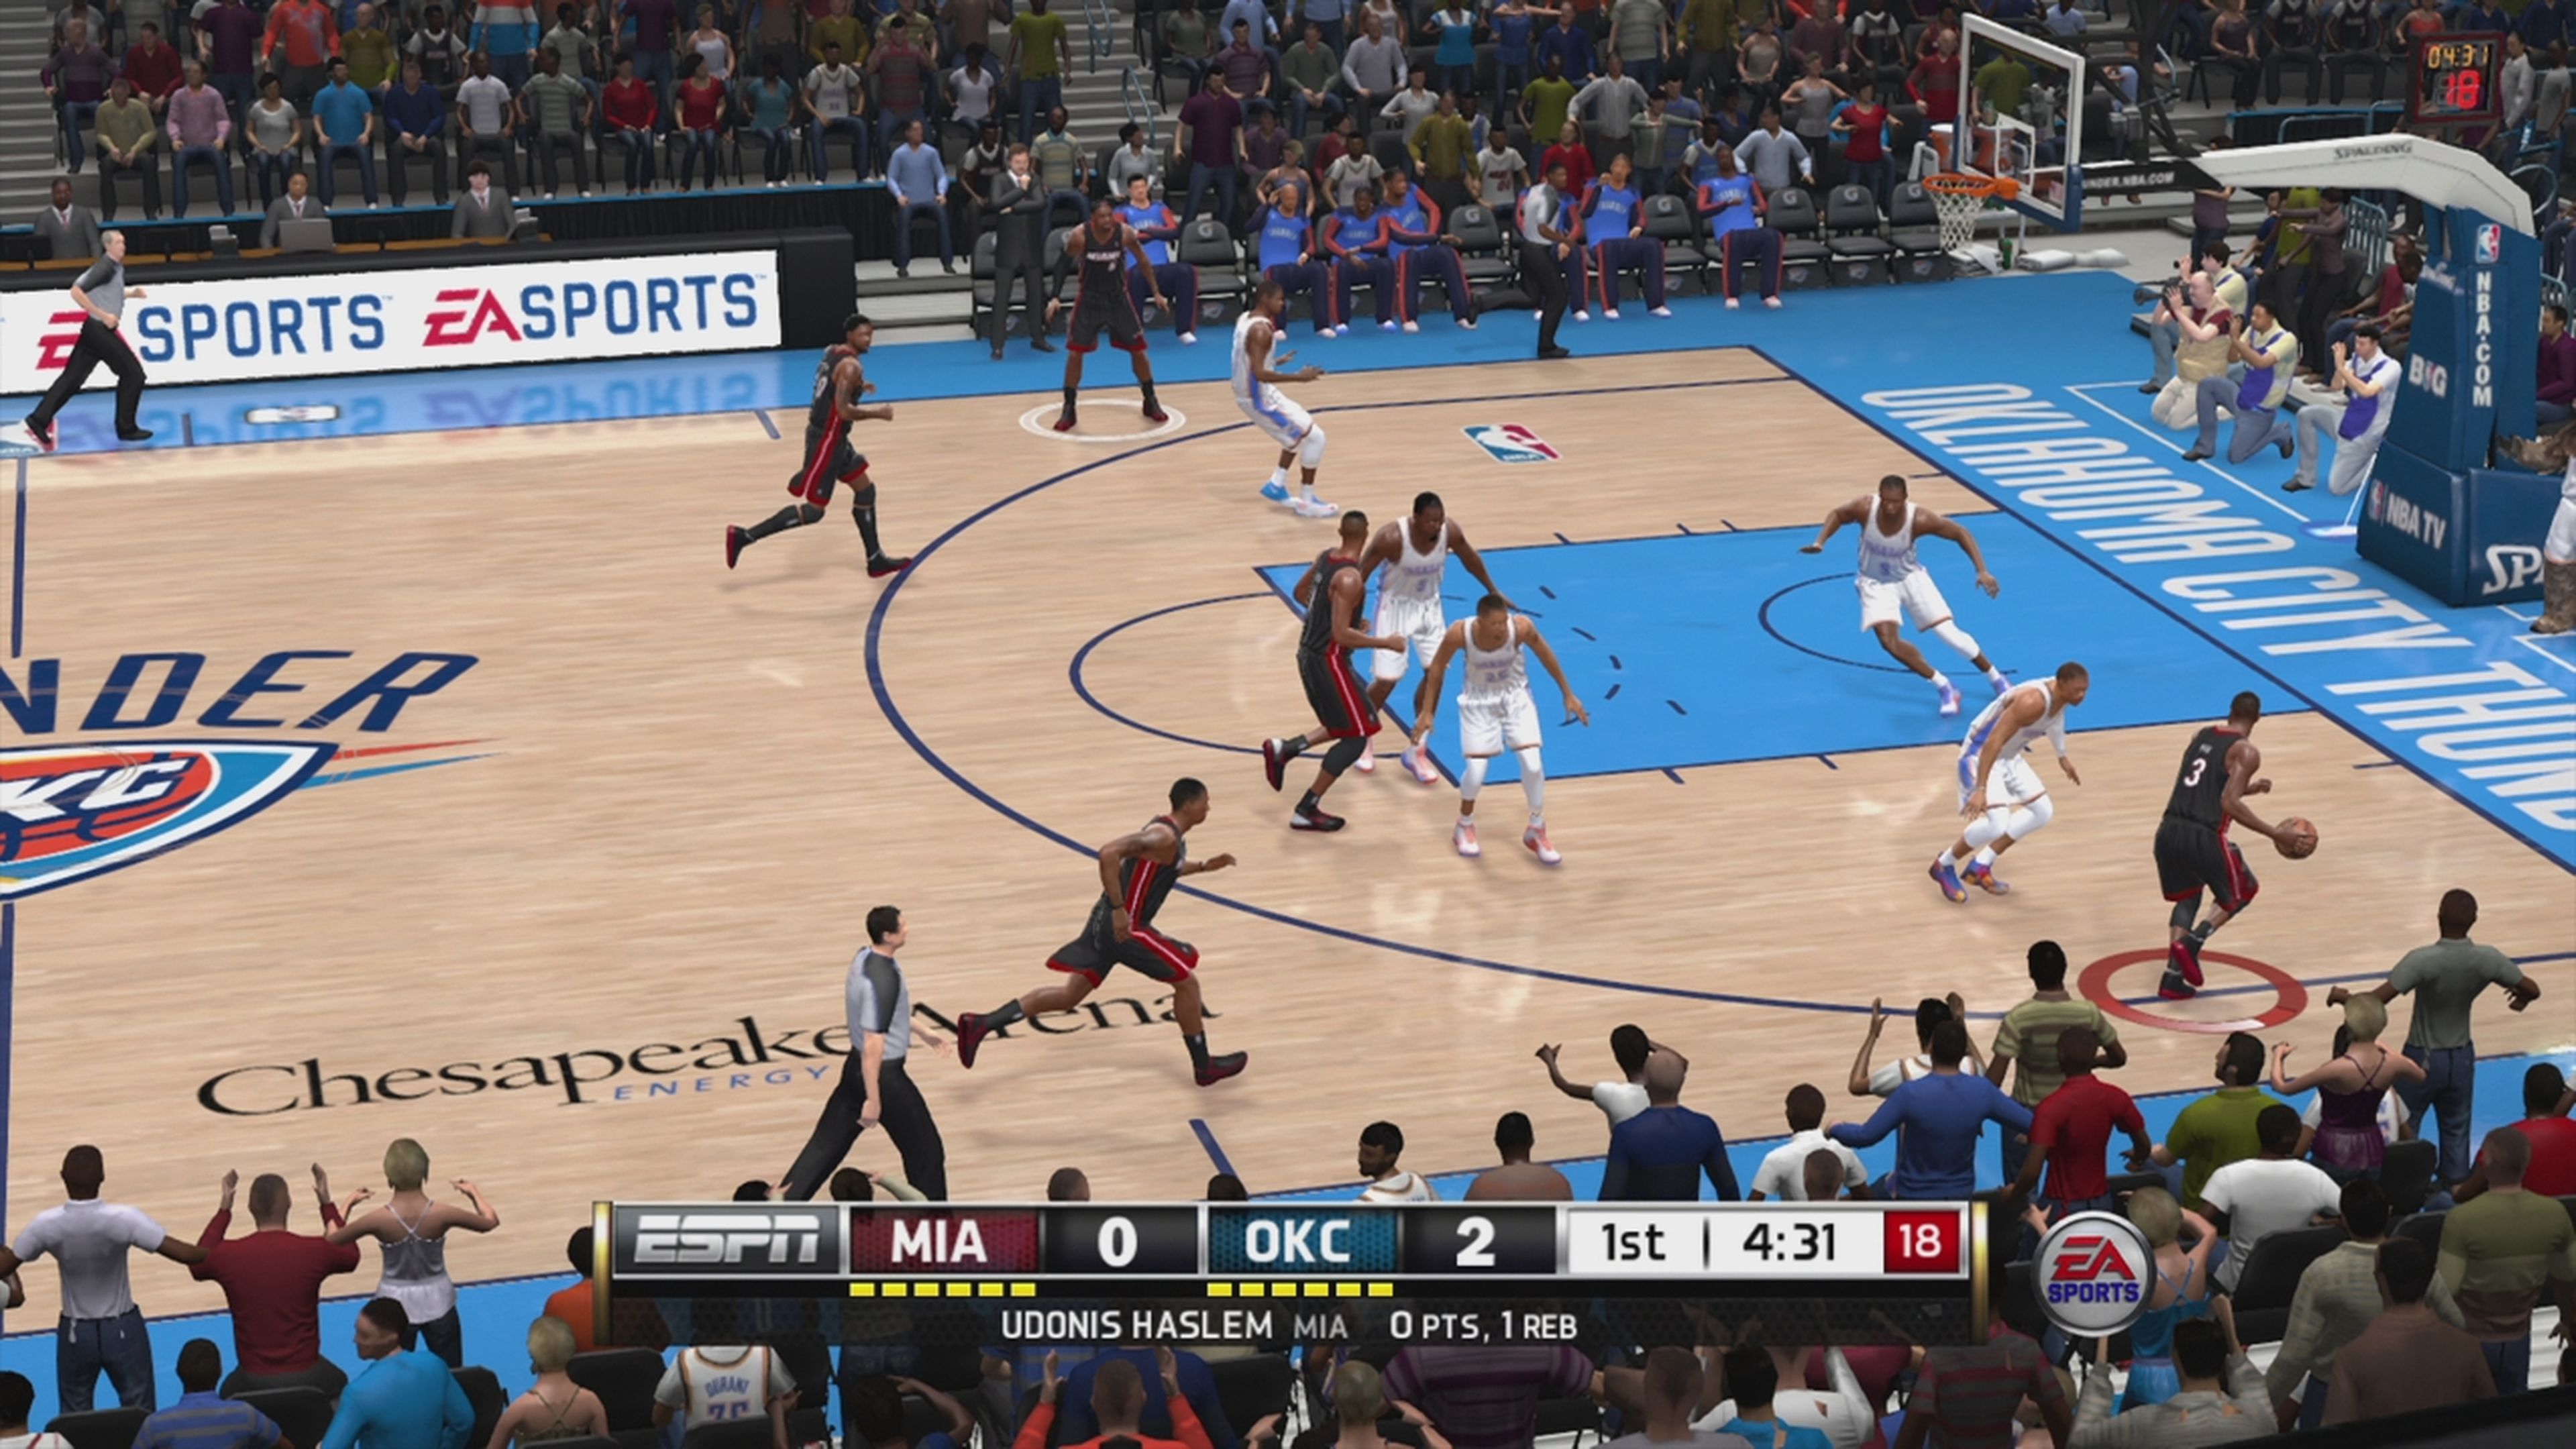 Análisis de NBA Live 14 para PS4 y Xbox One